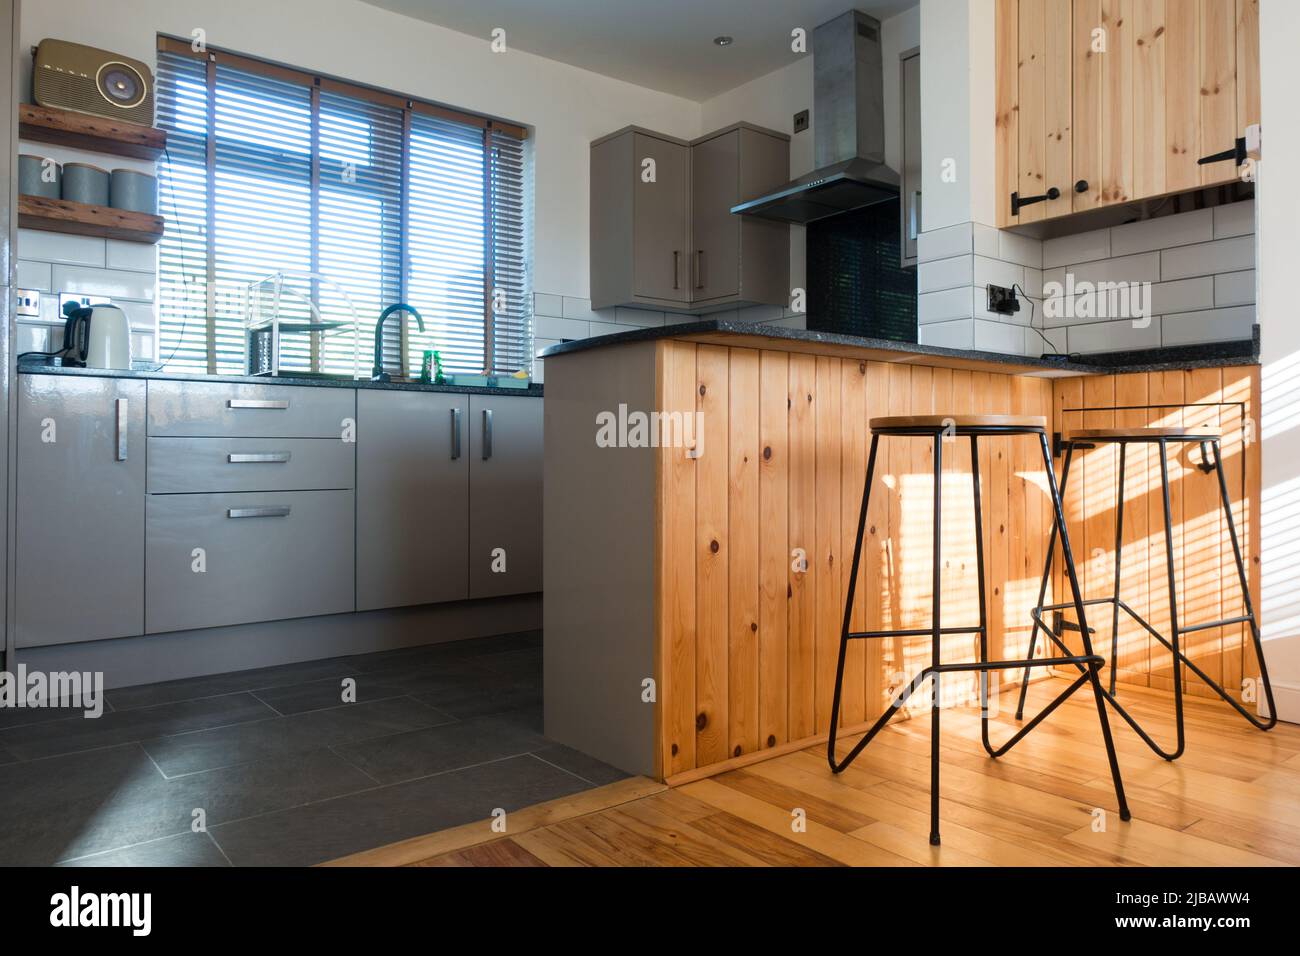 Vista a un nivel bajo de una cocina moderna con taburete alto de desayuno y otros equipos básicos Foto de stock